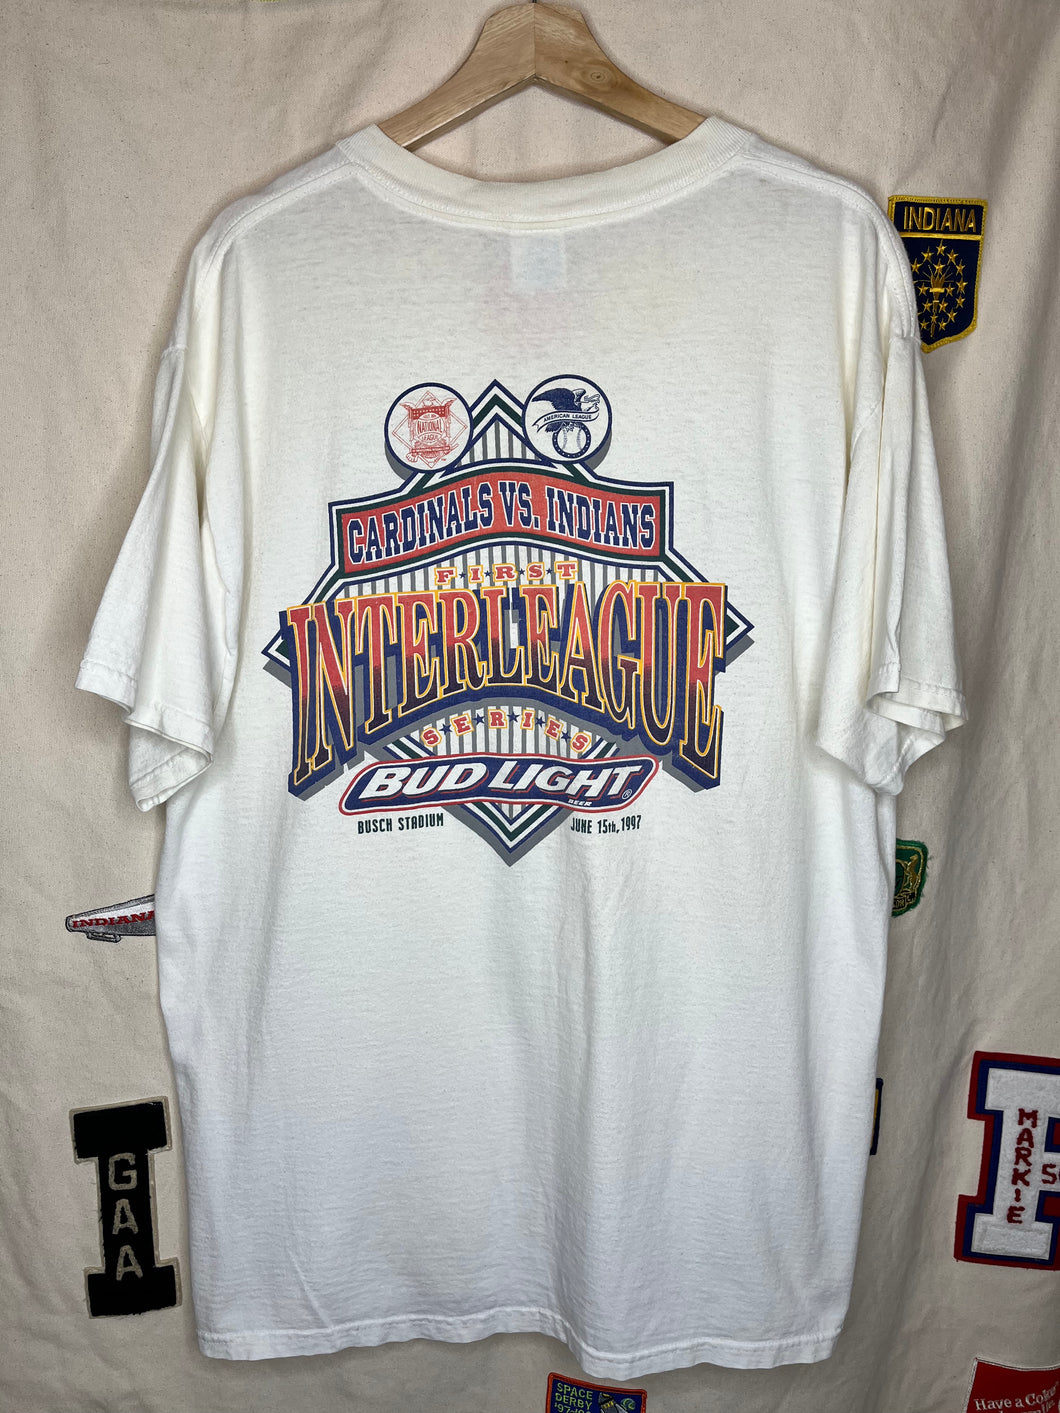 Vintage St. Louis Cardinals vs. Cleveland Indians 1995 Bud Light T-Shirt: XL